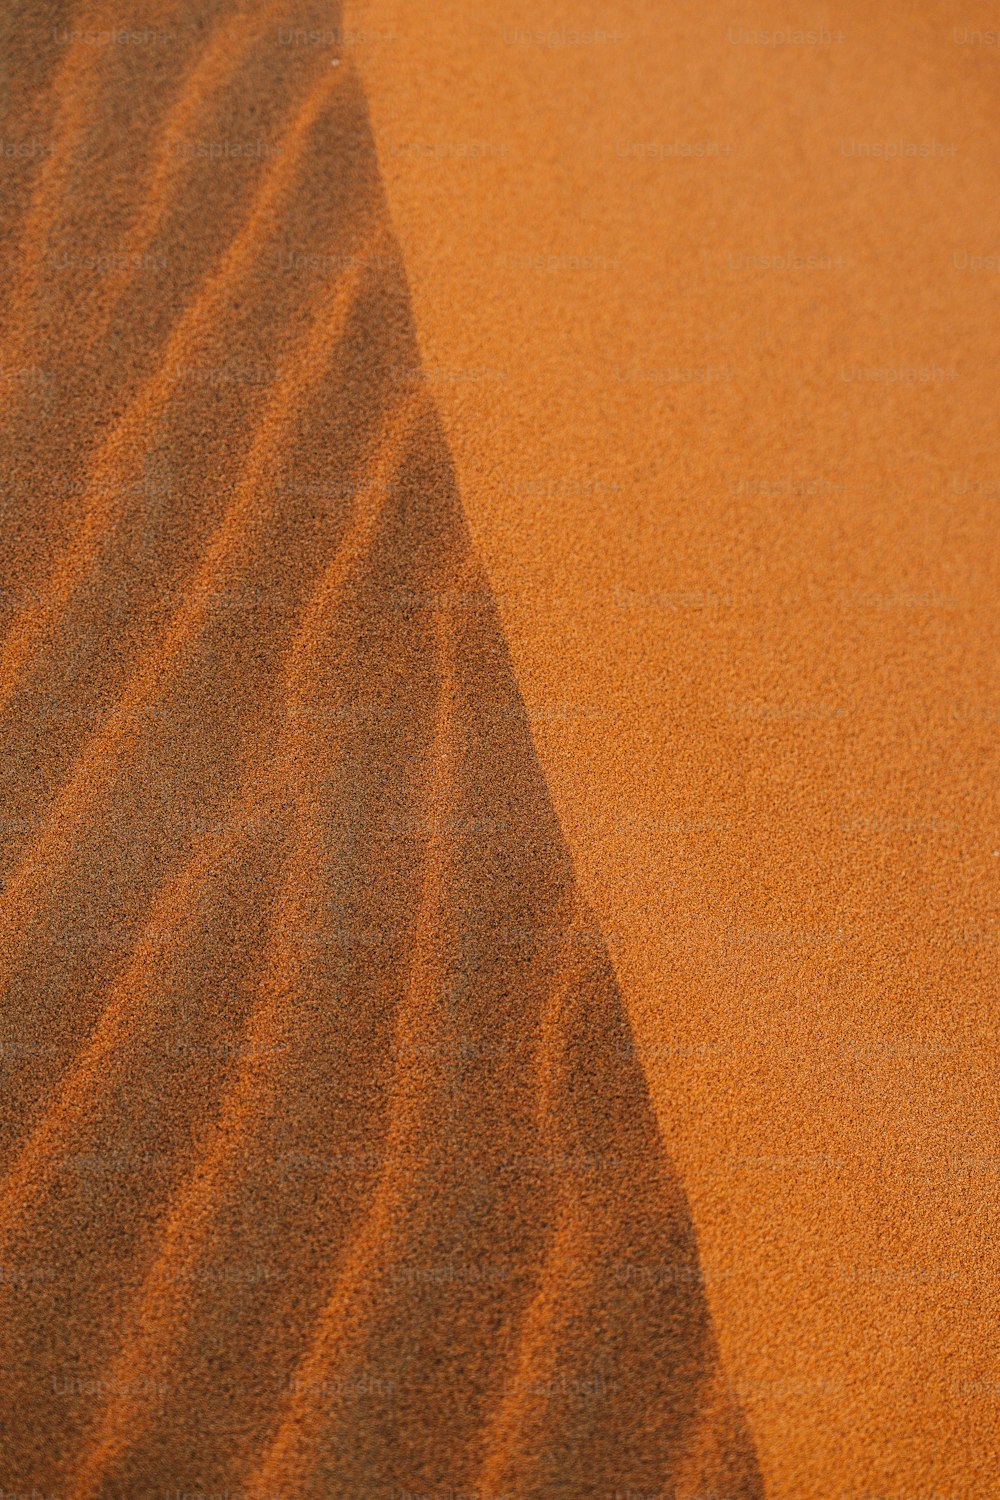 uma cena desértica com uma duna de areia ao longe